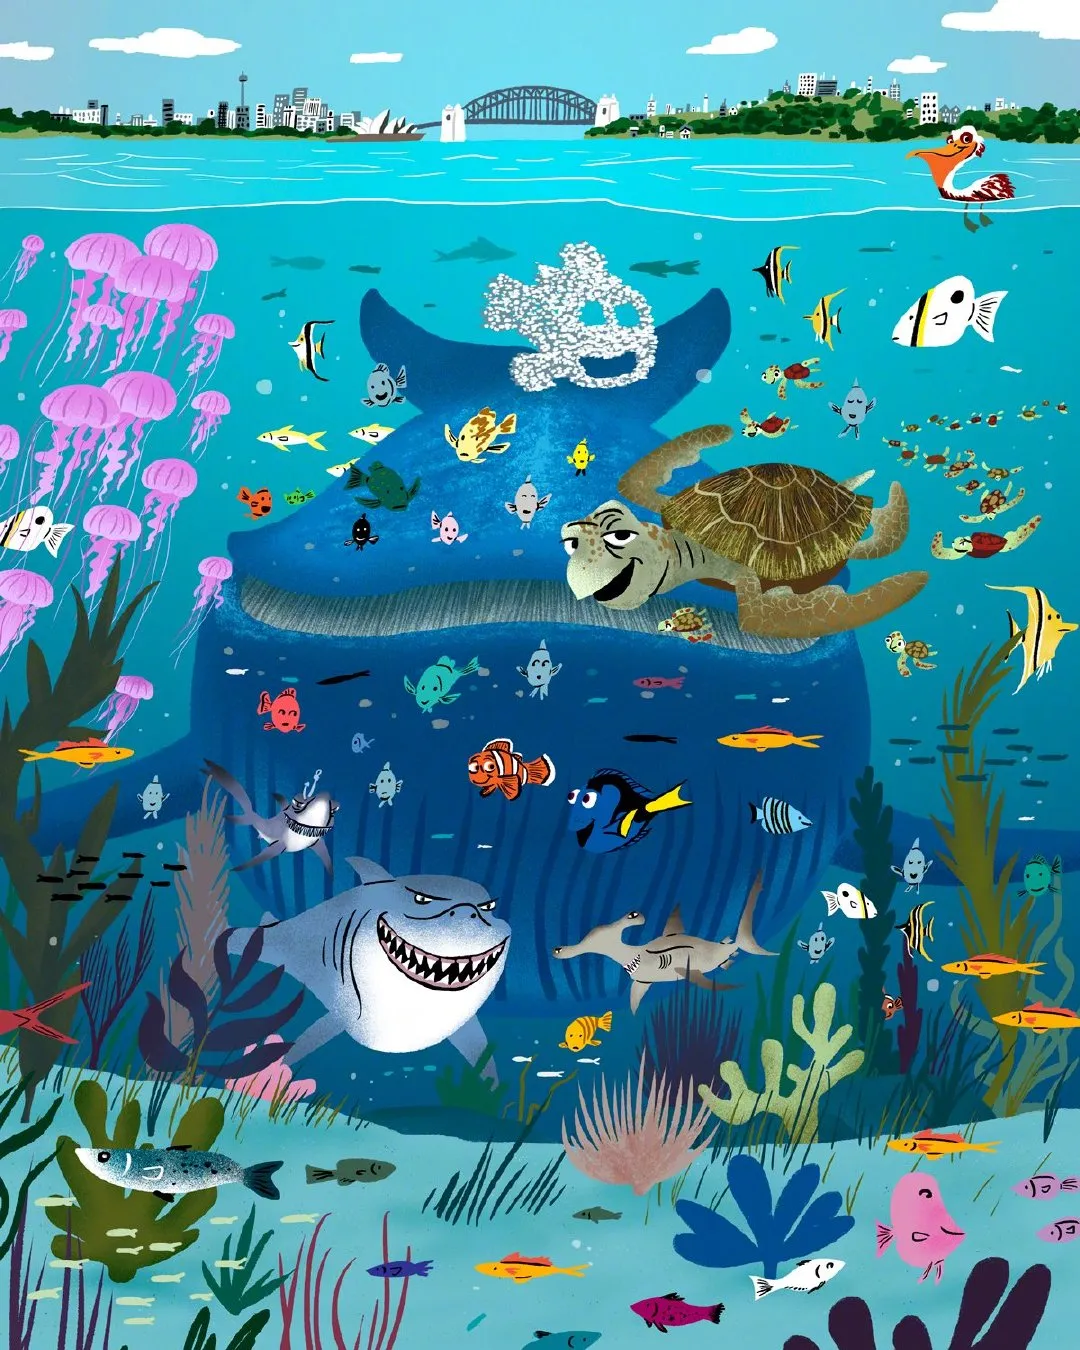 Pixar shares painter Daniel Gray-Barnett's 'Finding Nemo' art painting | FMV6